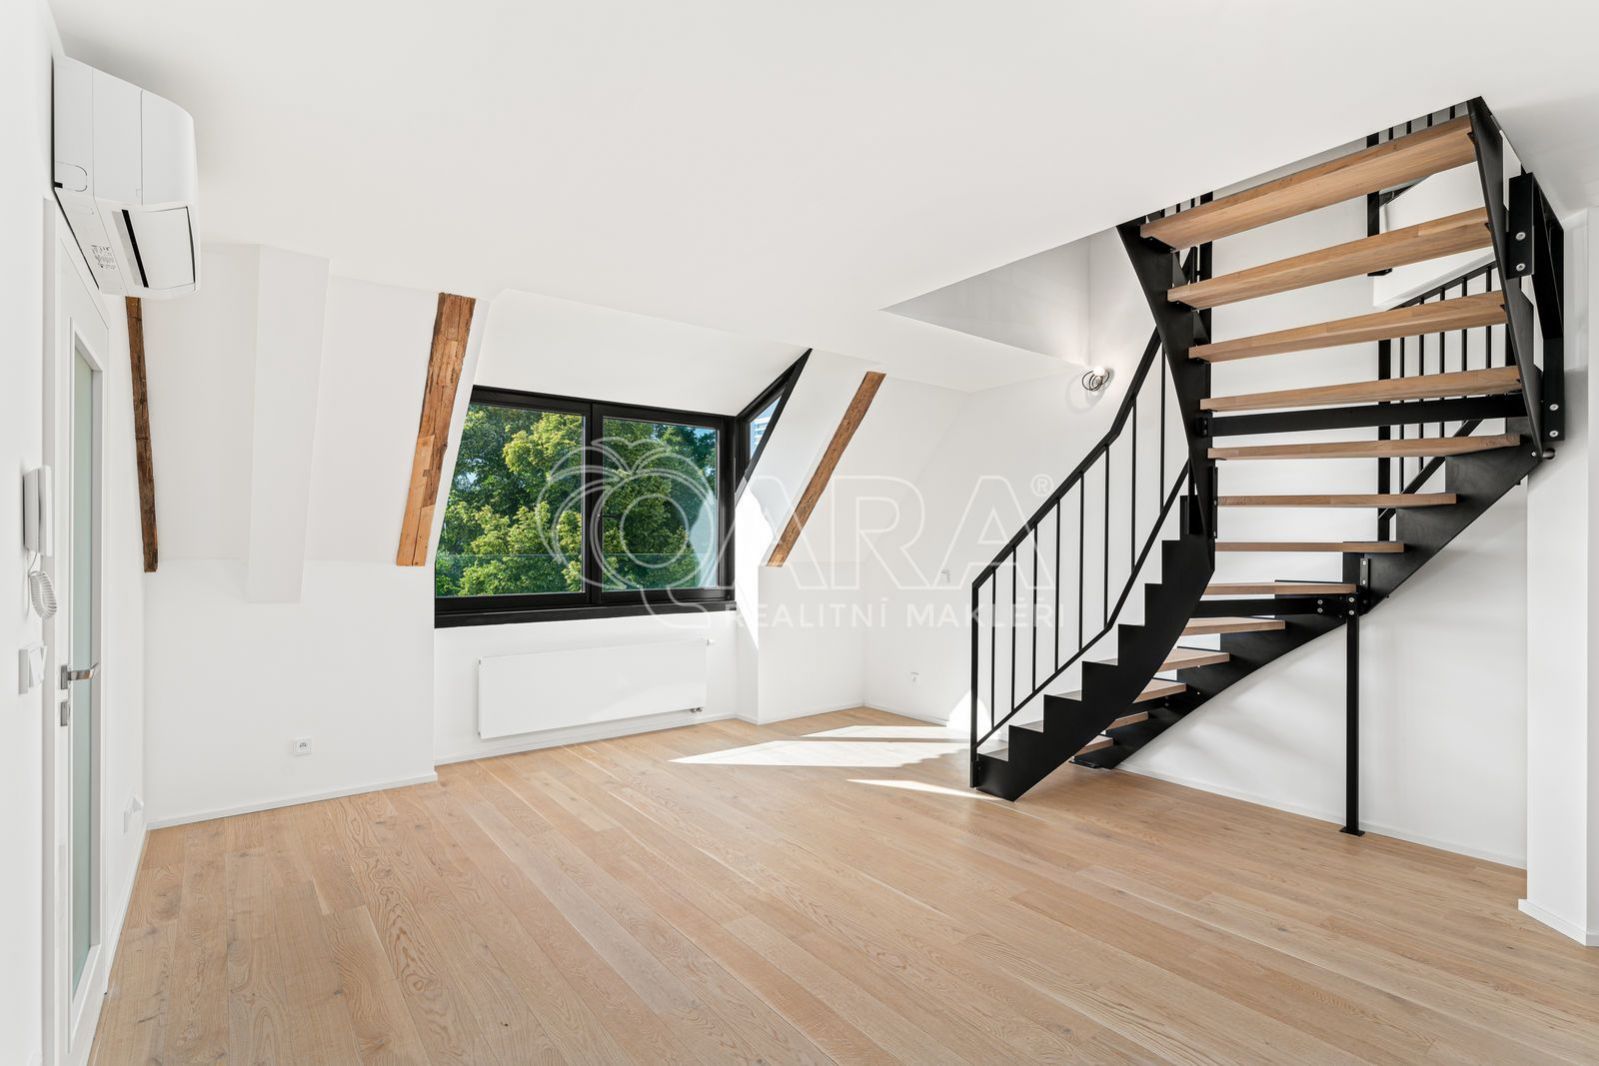 Moderní mezonet 5+kk, 127 m2, komfortní rodinné bydlení s jedinečnou atmosférou v barokním zámečku, obrázek č. 3